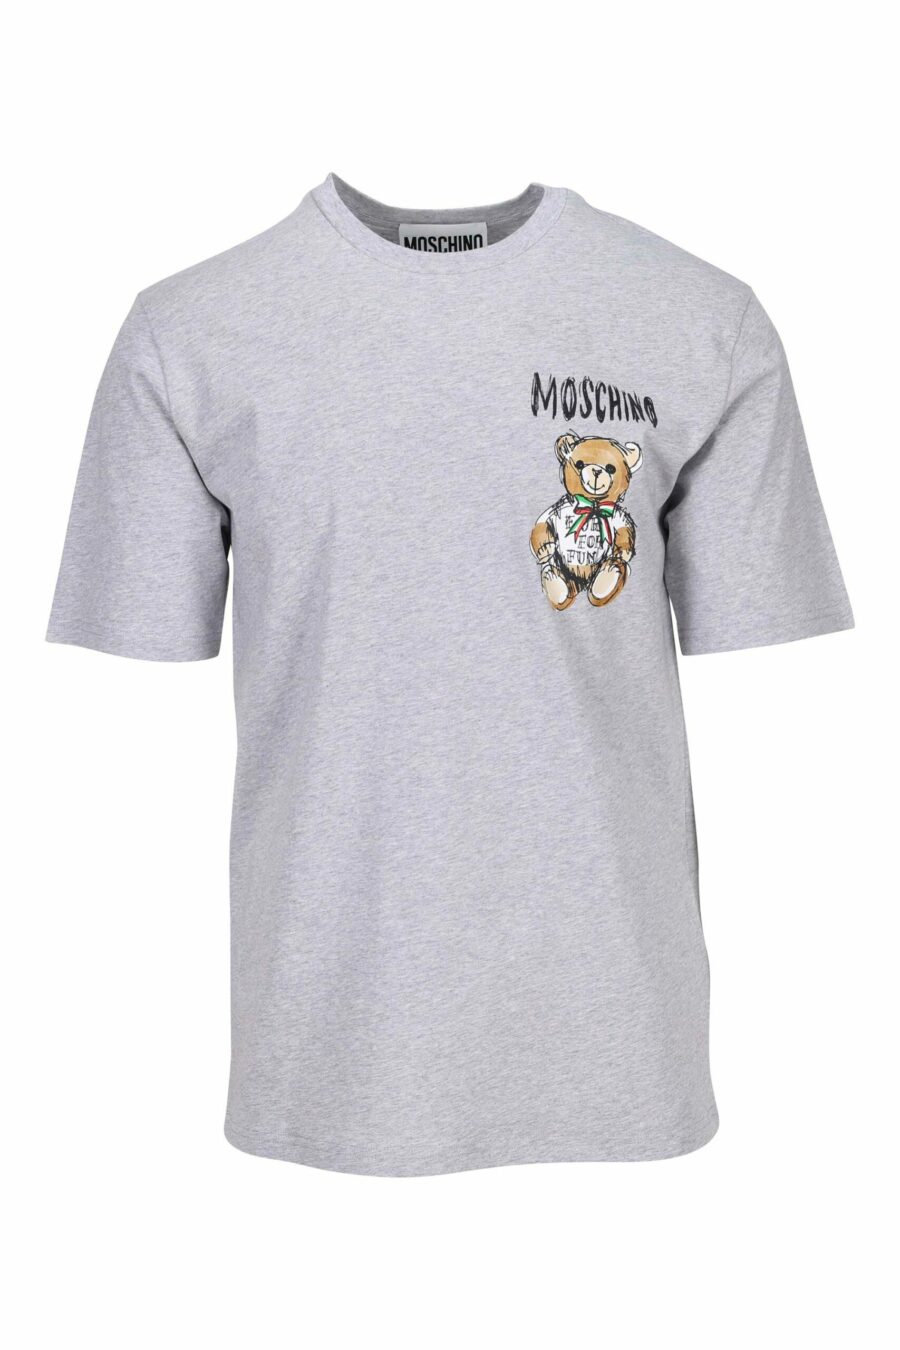 Graues T-Shirt mit Mini-Bärenlogozeichnung - 667113767741 skaliert